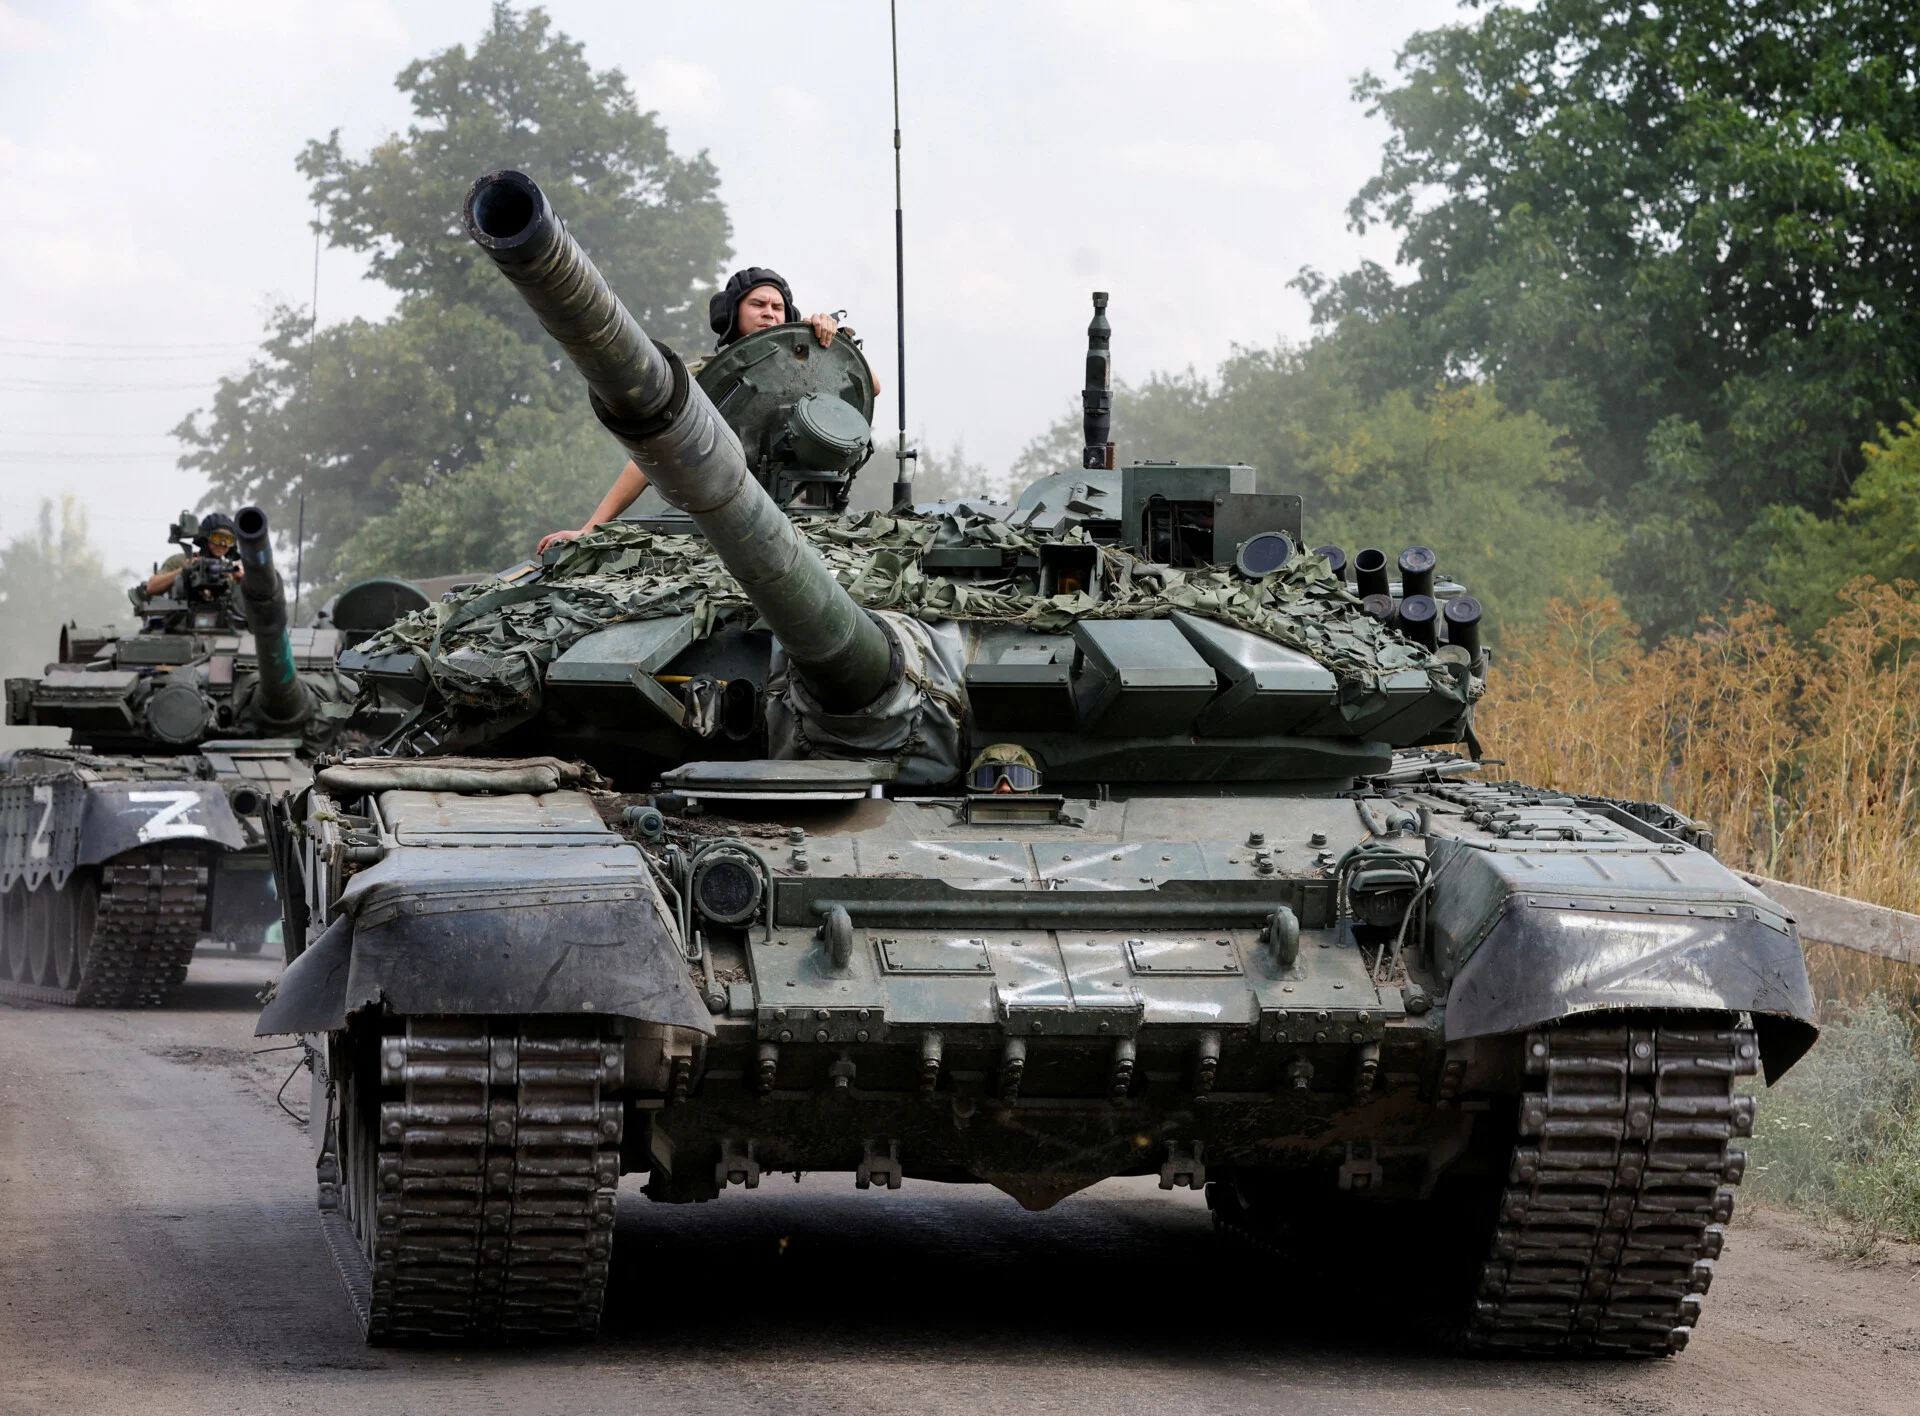 Ιστορικοί παραλληλισμοί – Ρωσία: Γαλλικά στρατεύματα στην Ουκρανία θα έχουν την τύχη της στρατιάς του Ναπολέοντα